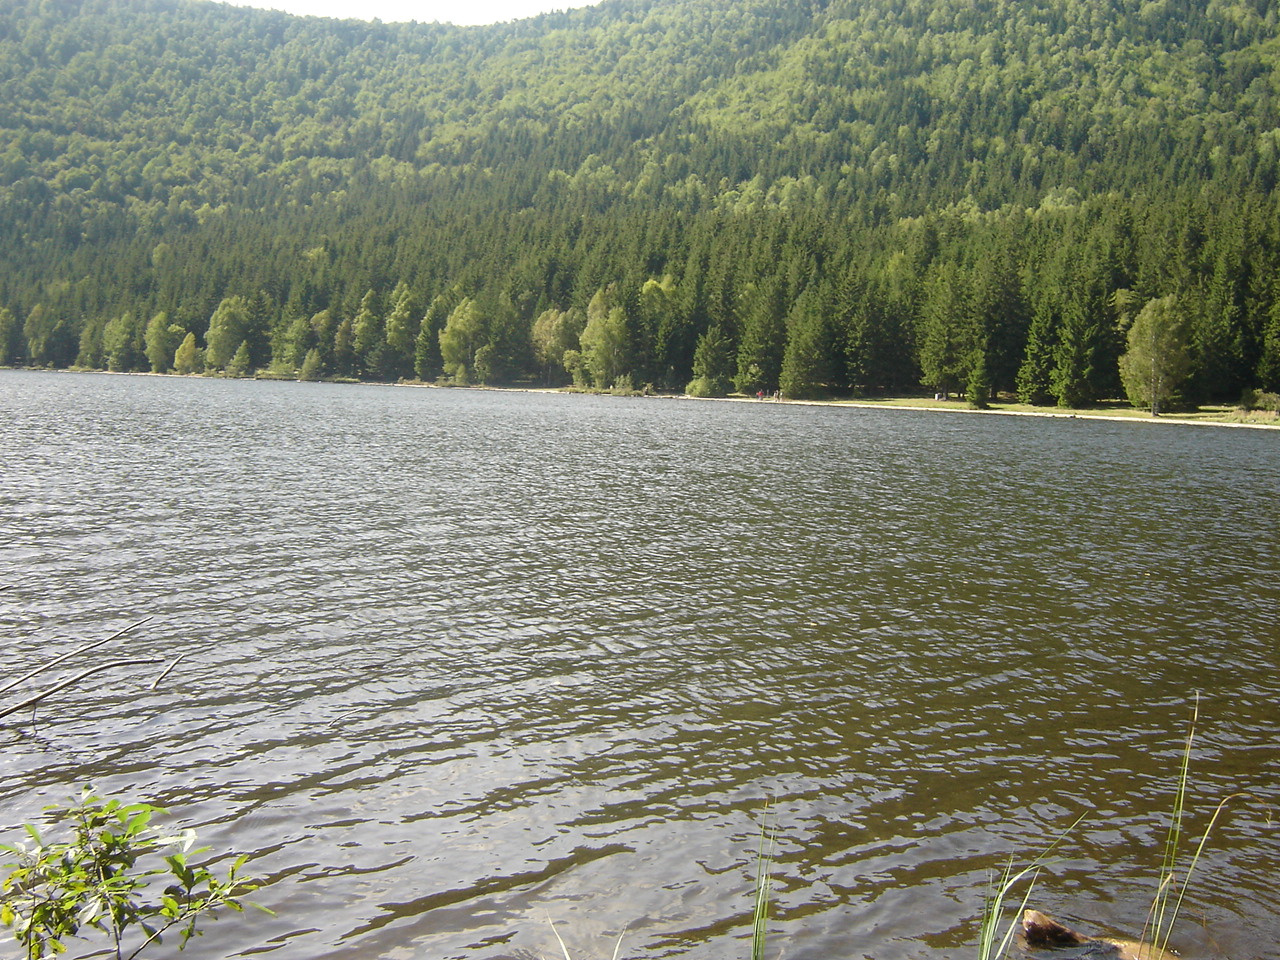 Székelyföld - Szent Anna-tó